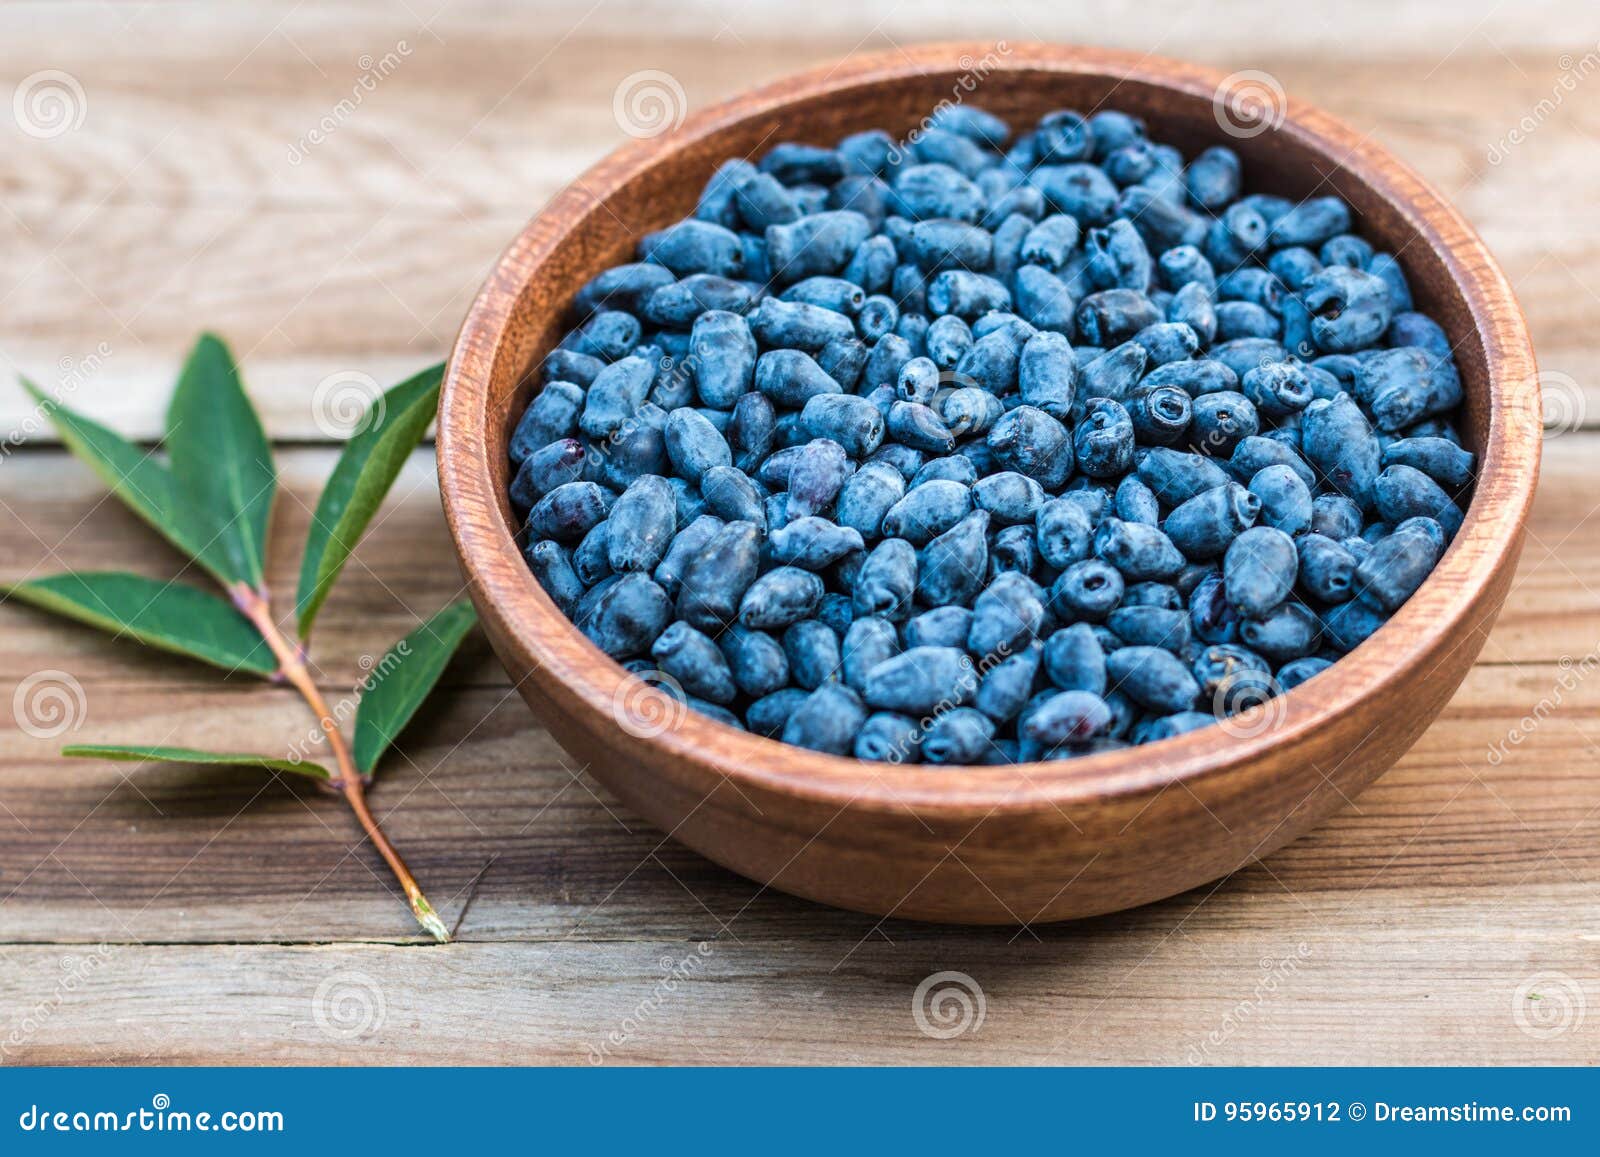 harvest of haskap berries, lonicera caerulea, also calles honeyberries, blue berry honeysuckle or sweetberry honeysuckle